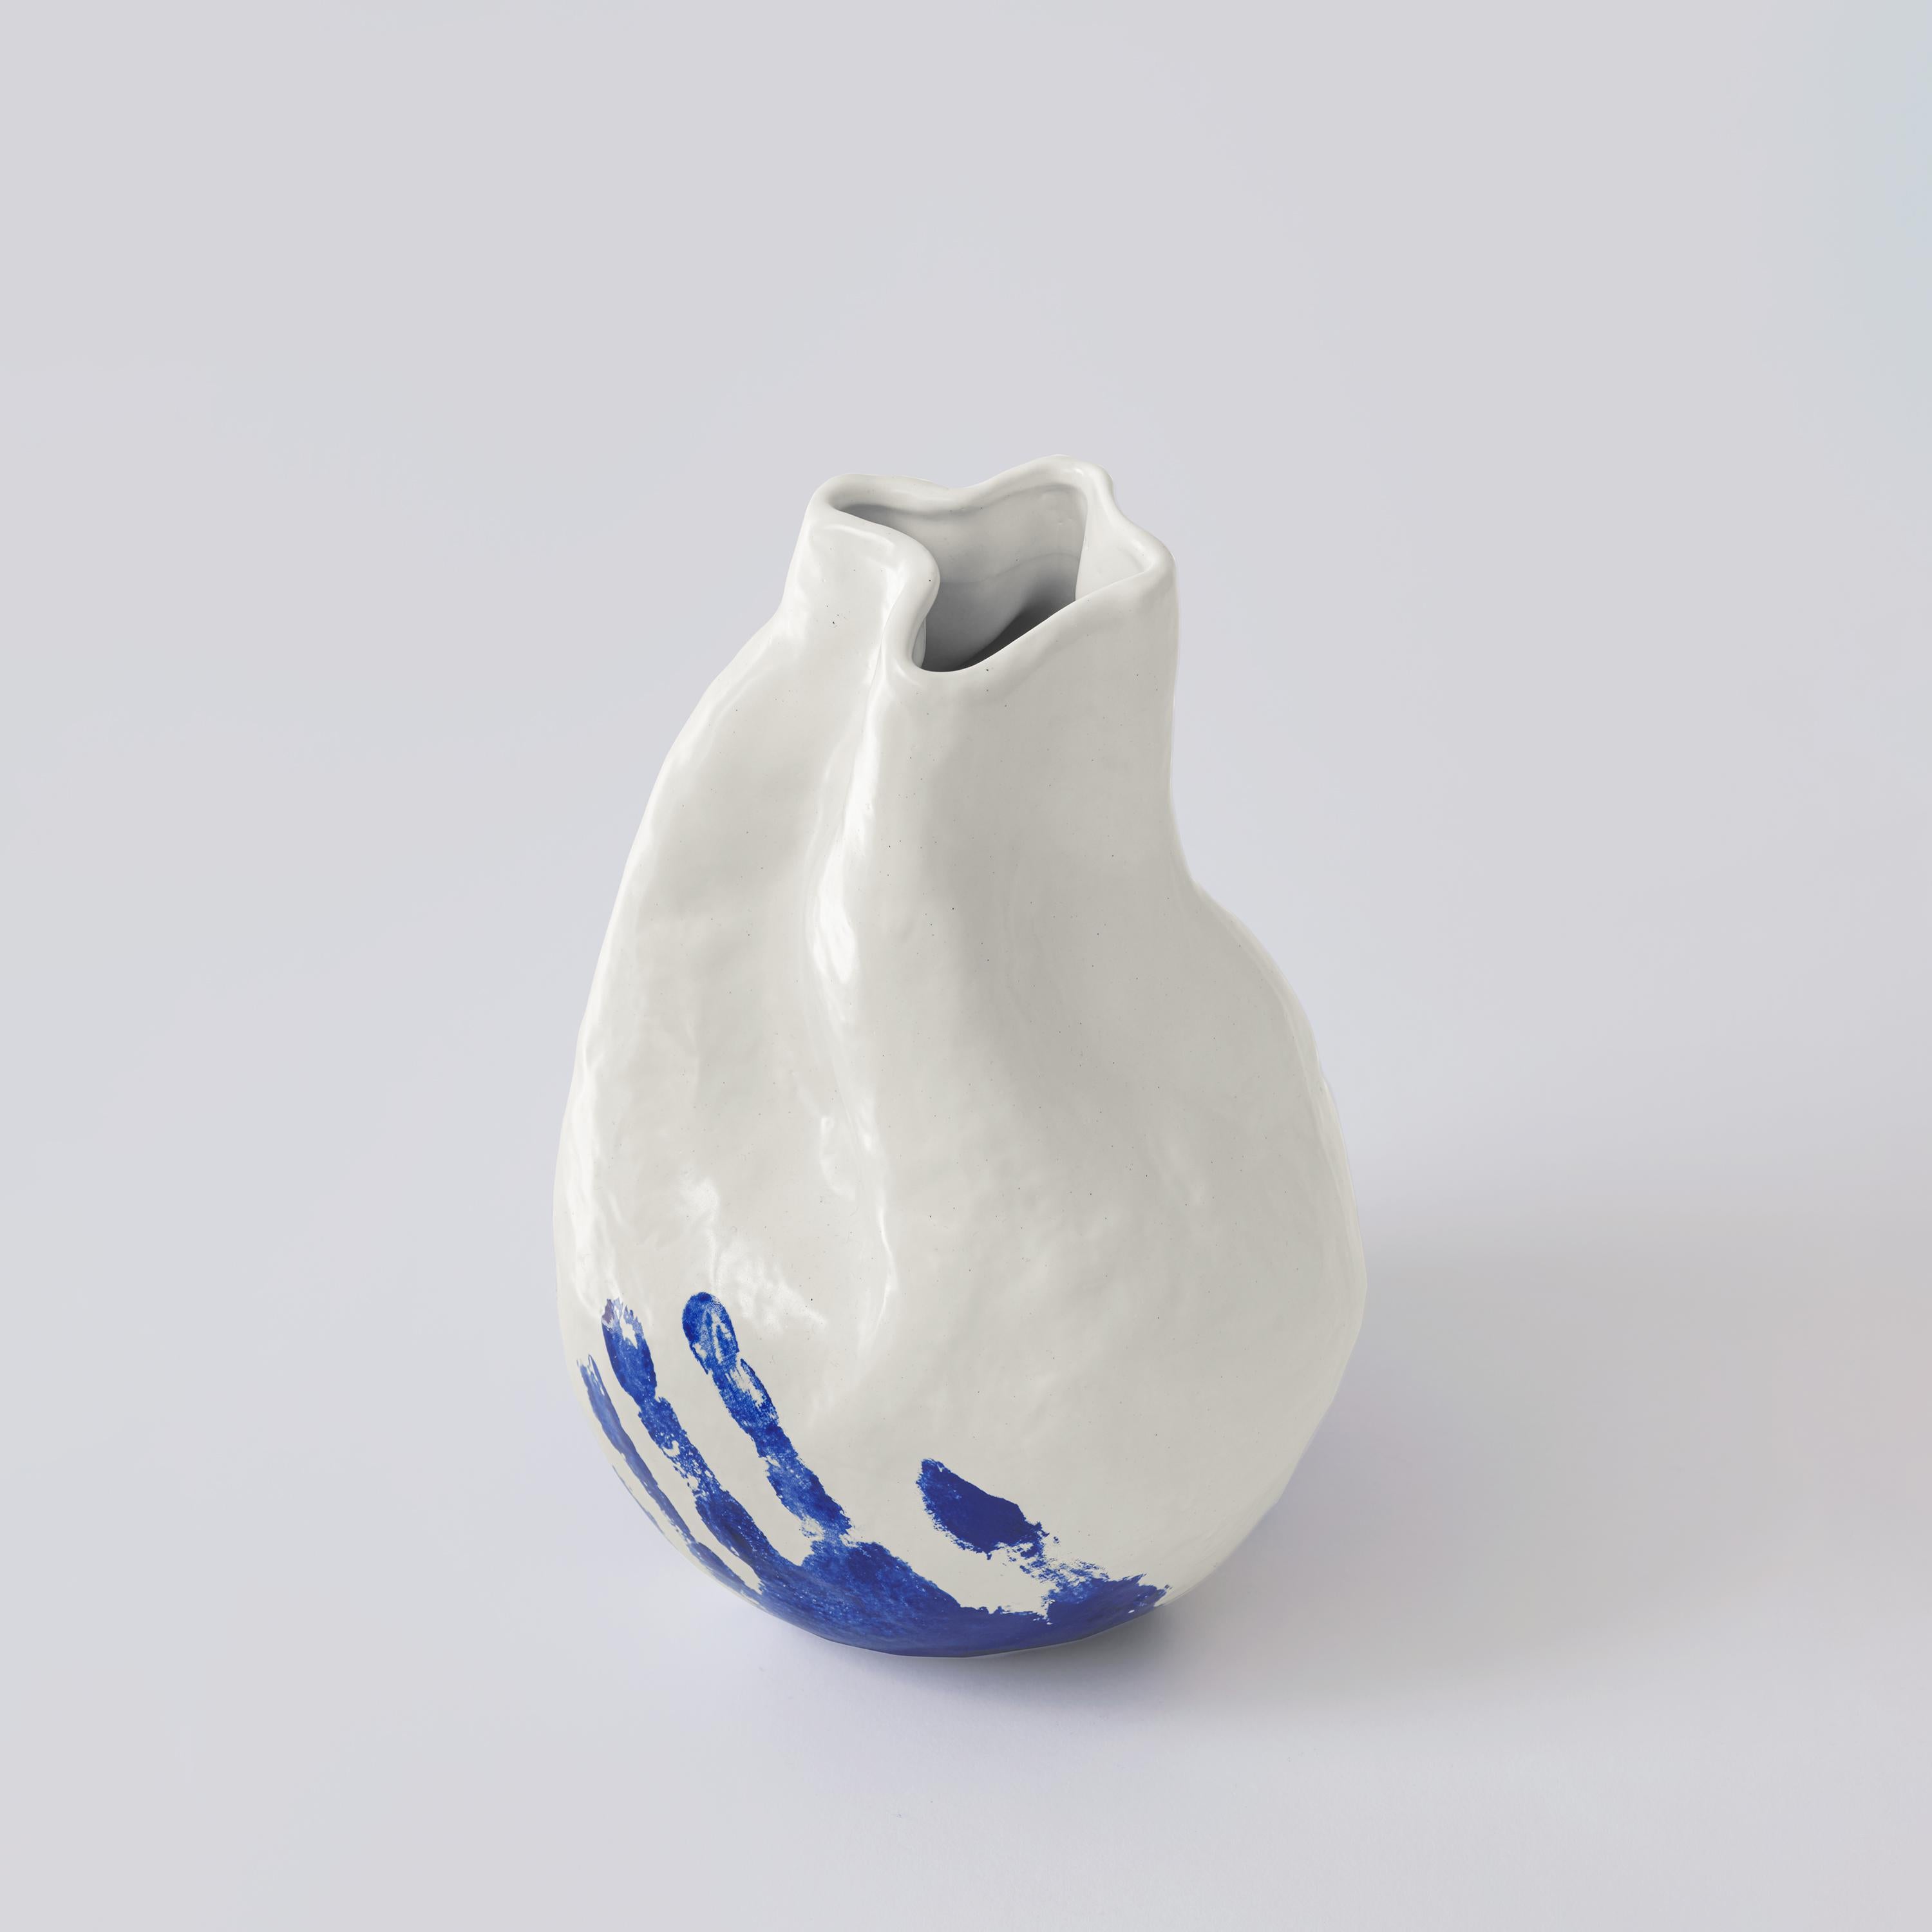 Diese handgefertigte Porzellanvase aus der The Vibrant Touch Collection bietet ein taktiles Zusammenspiel von Texturen, mit einer glänzenden weißen Oberfläche, die mit einem kräftigen blauen Handabdruck am Boden kontrastiert. Die organische Form der